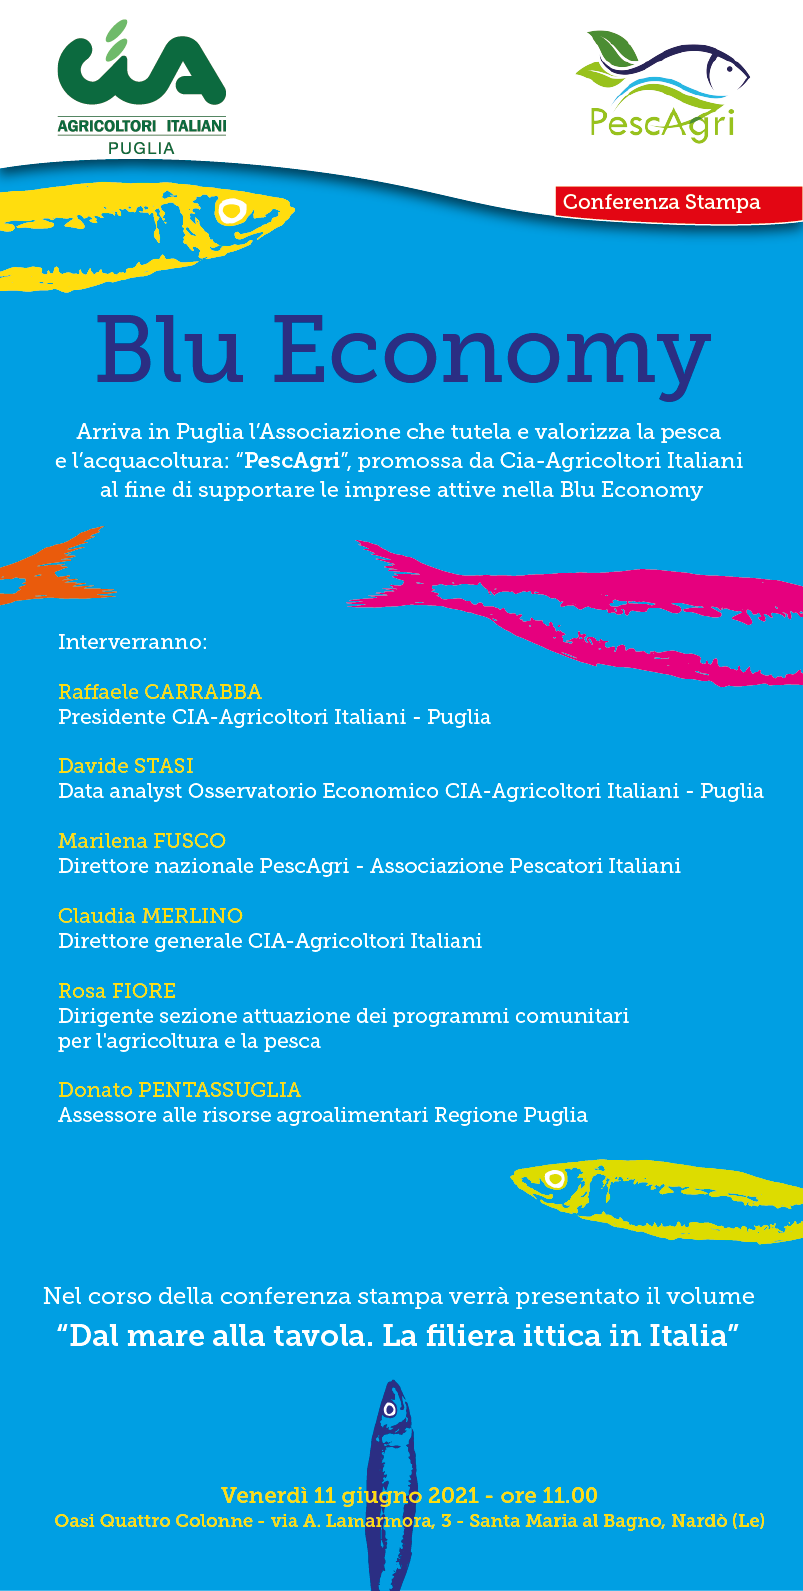 Cia Puglia-PescAgri - locandina conferenza stampa